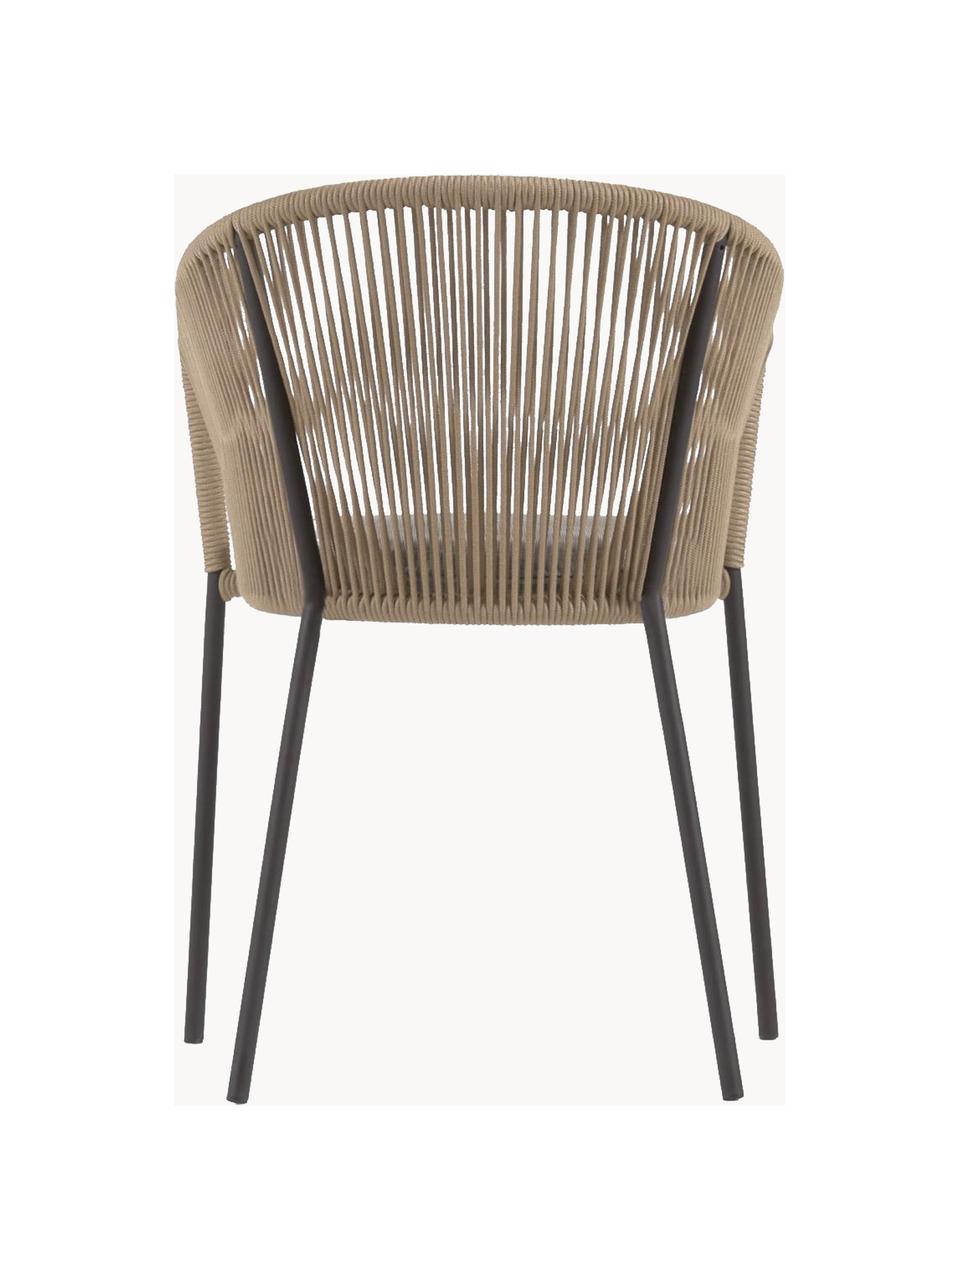 Krzesło ogrodowe Yanet, Tapicerka: 100% poliester, Stelaż: metal galwanizowany, Jasny brązowy, taupe tkanina, S 56 x G 55 cm